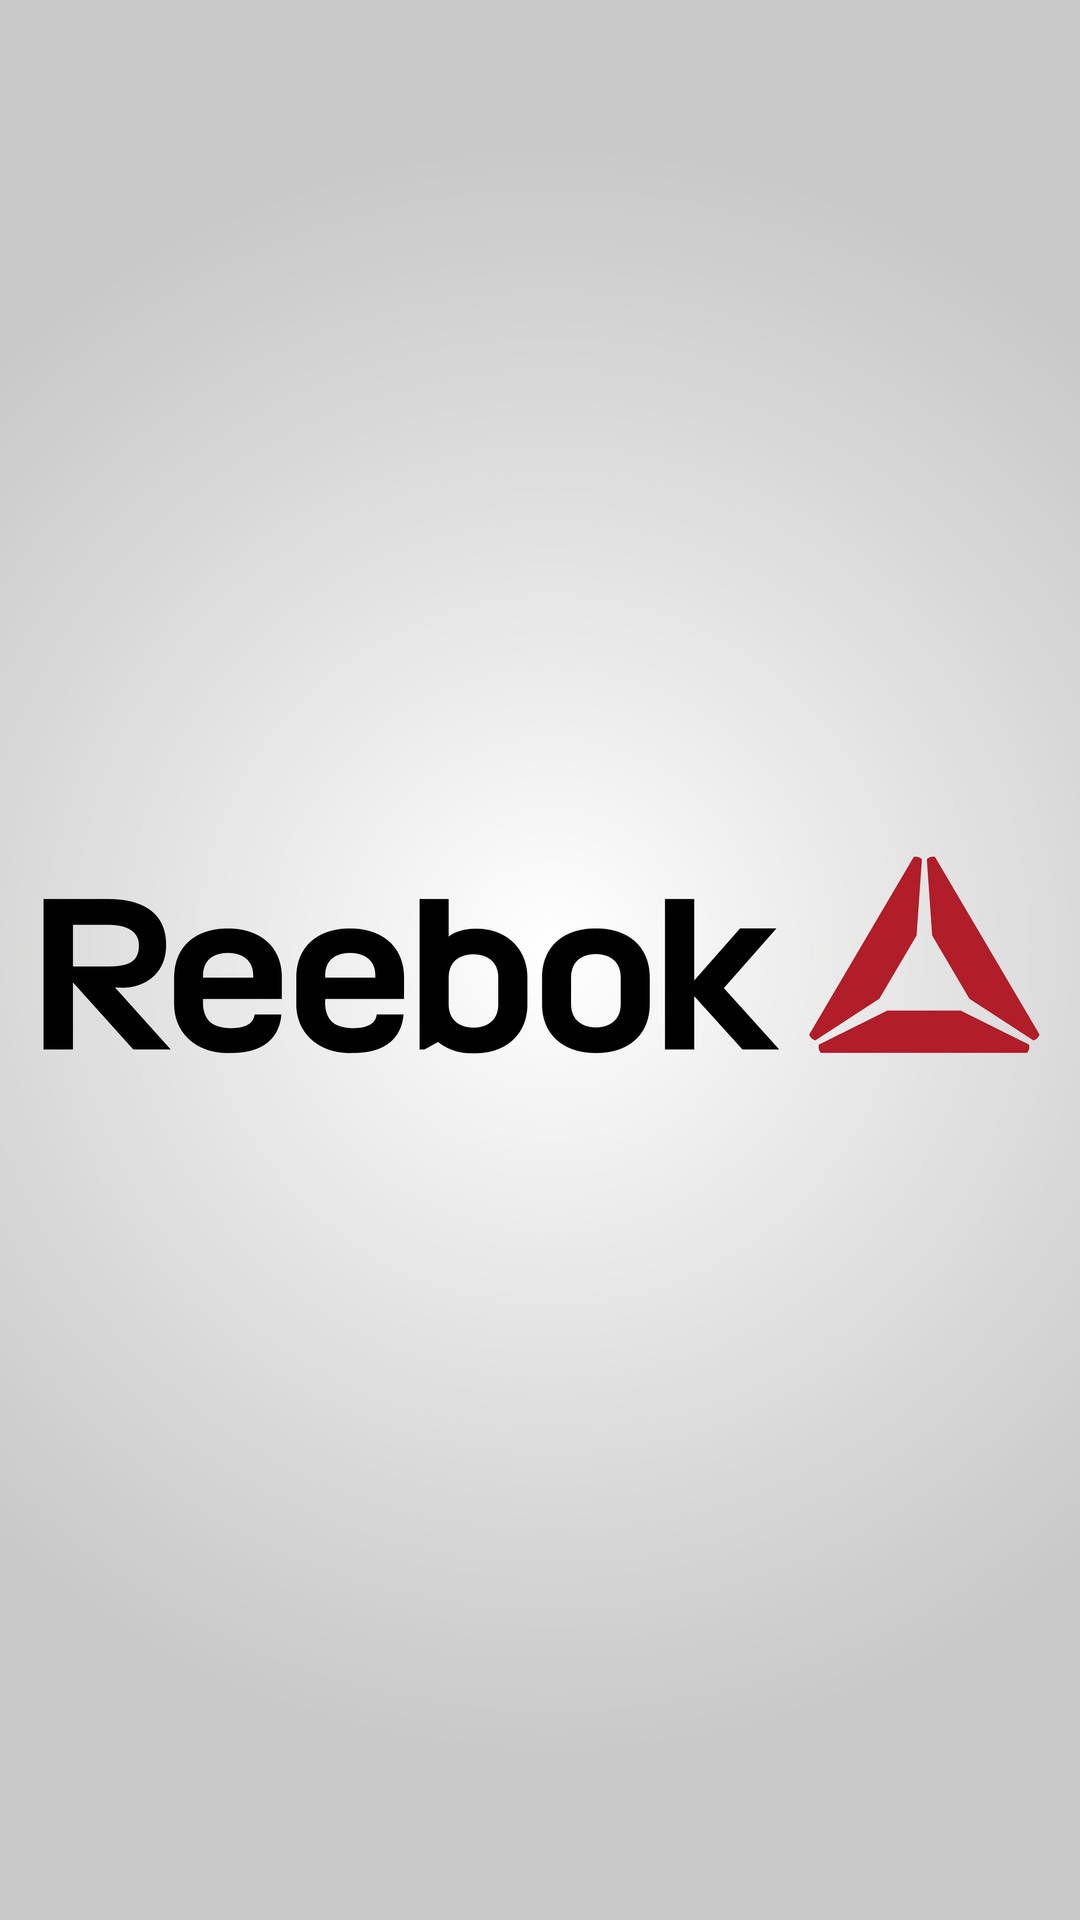 Reebok Wallpapers - 4k, HD Reebok Backgrounds on WallpaperBat